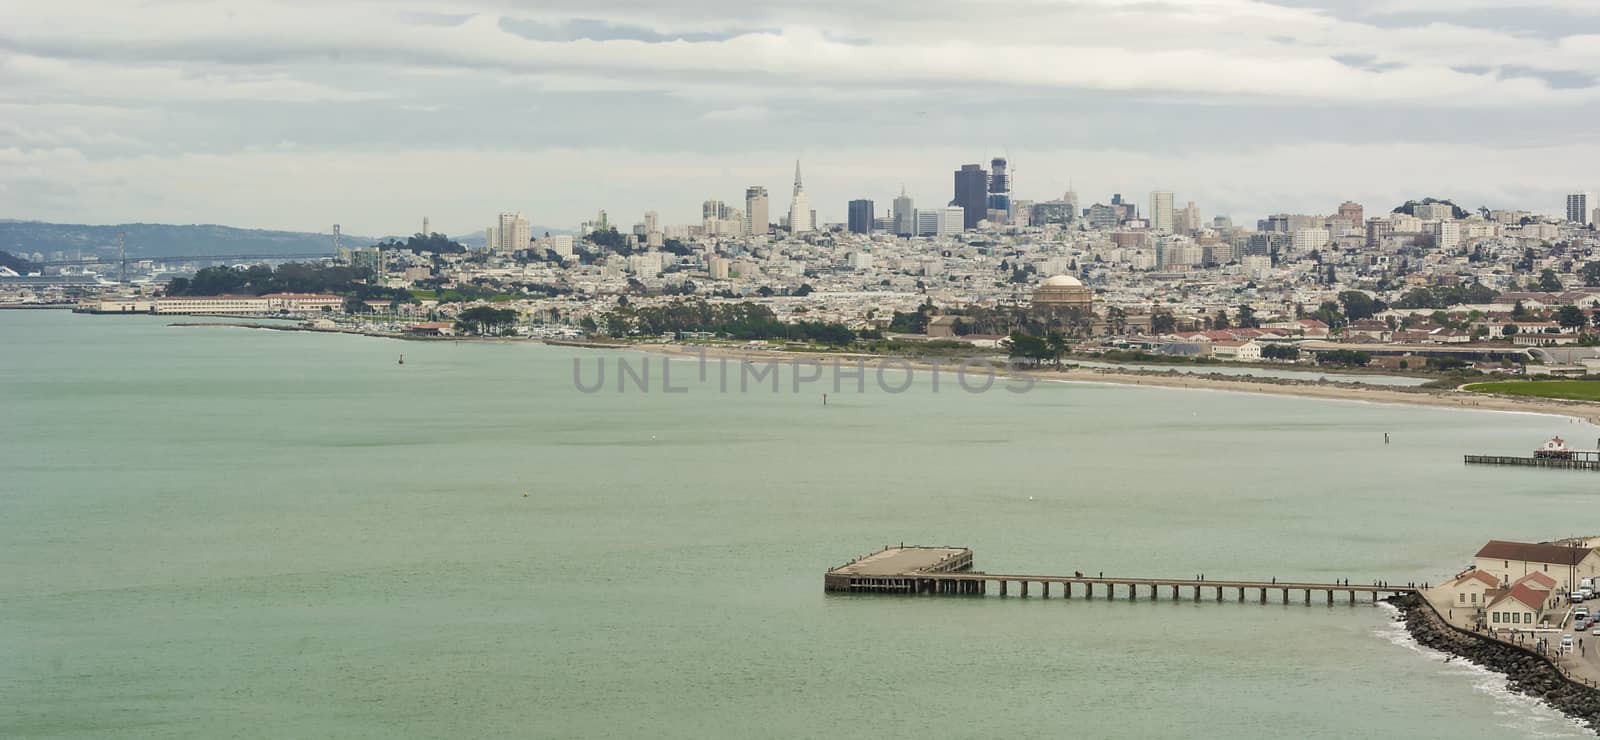 cityscape of San Francisco by rarrarorro